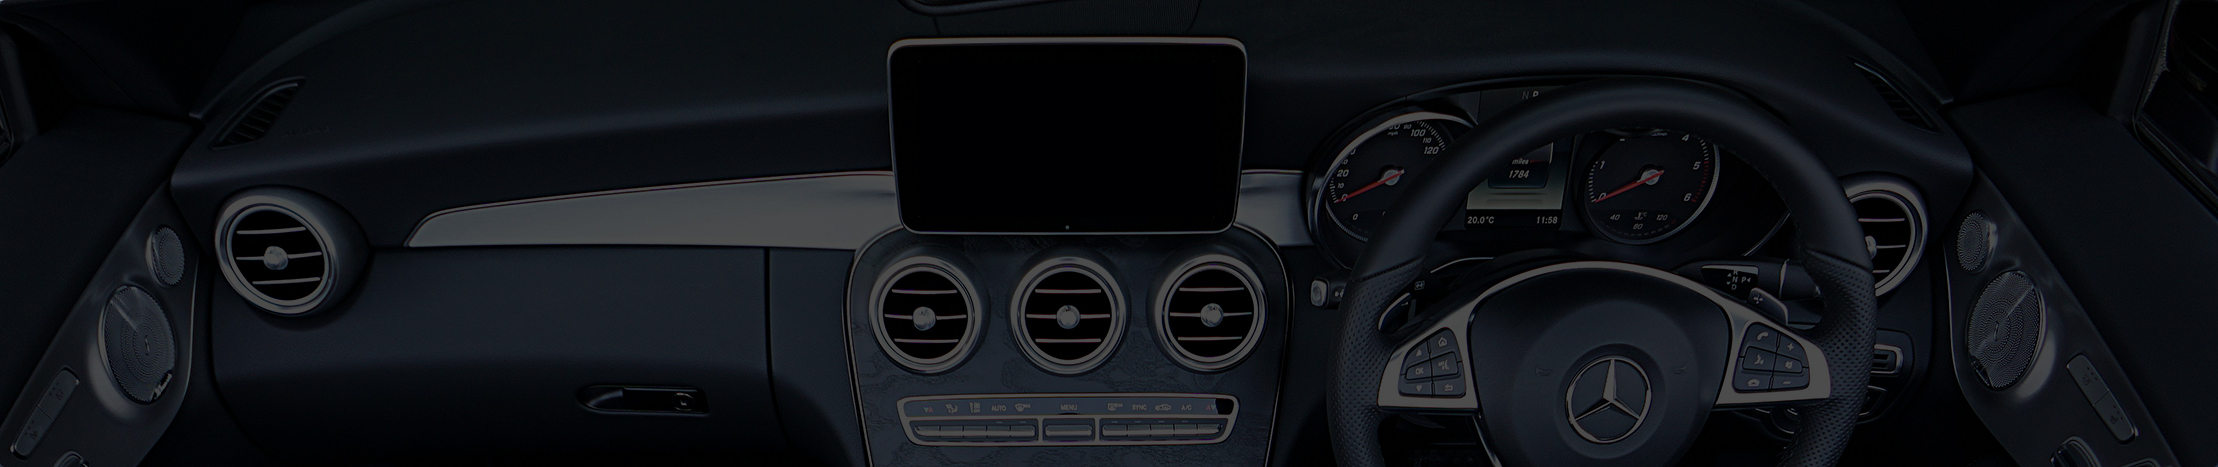 auto dashboard met een inbouw navigatie systeem